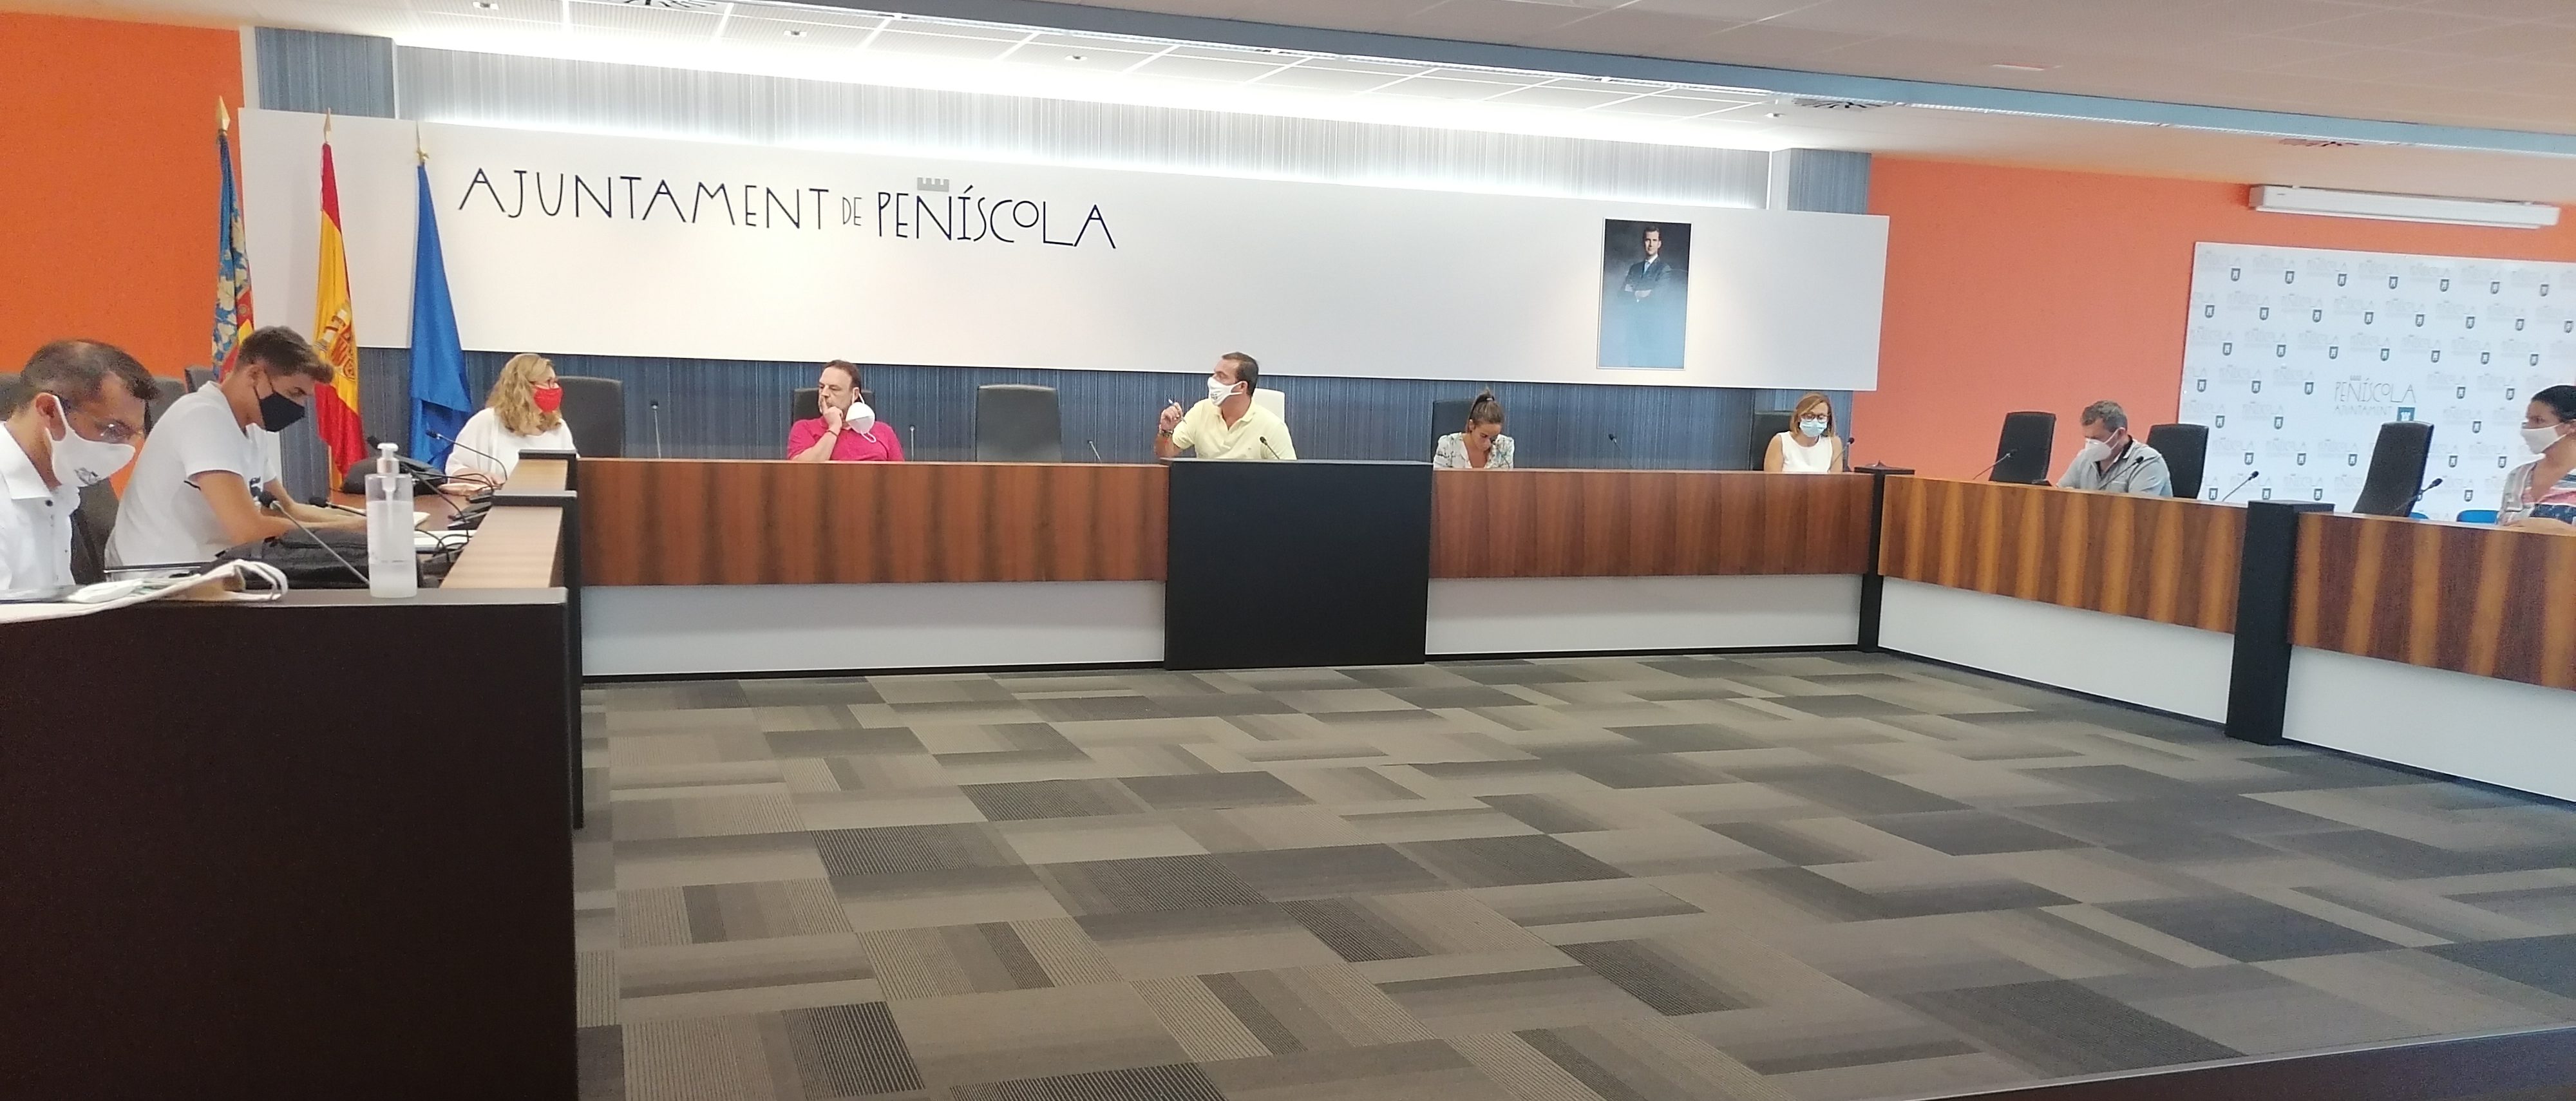 L'Ajuntament de Peníscola aprova el reasfaltat del vial d'accés al col·legi